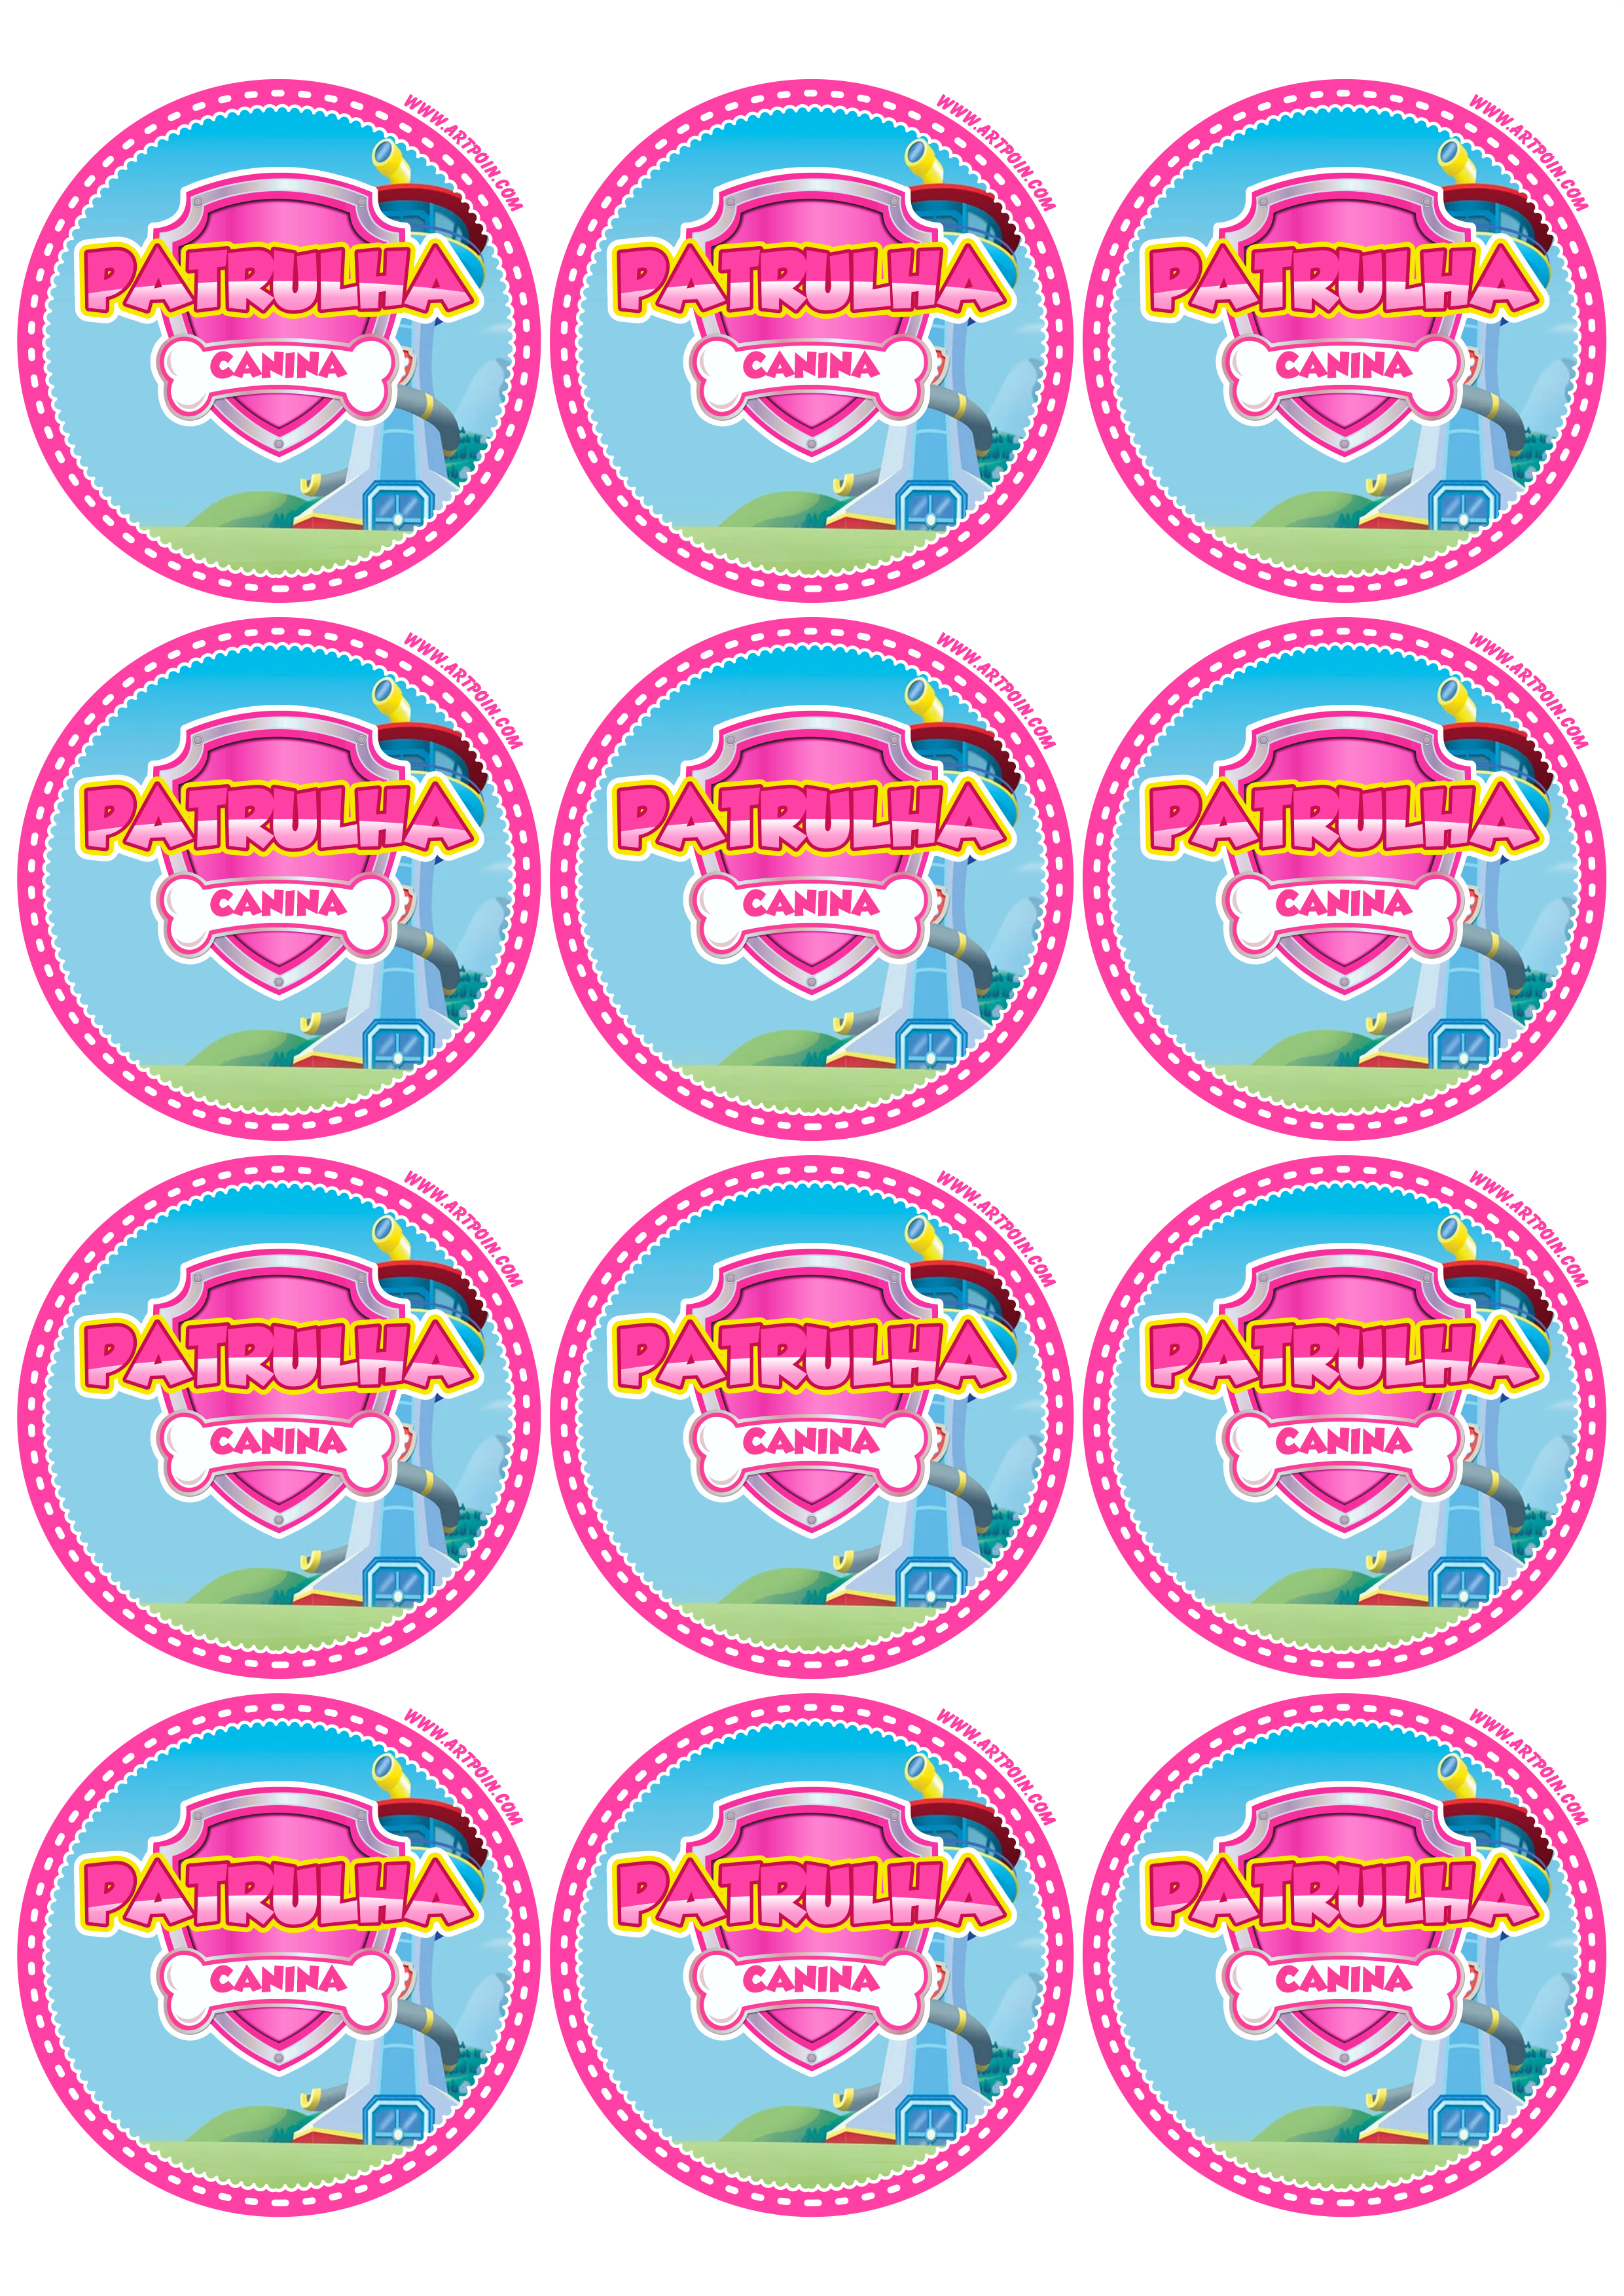 Patrulha canina rosa pink adesivo redondo tag sticker decoração de aniversário infantil artigos de papelaria 12 imagens png